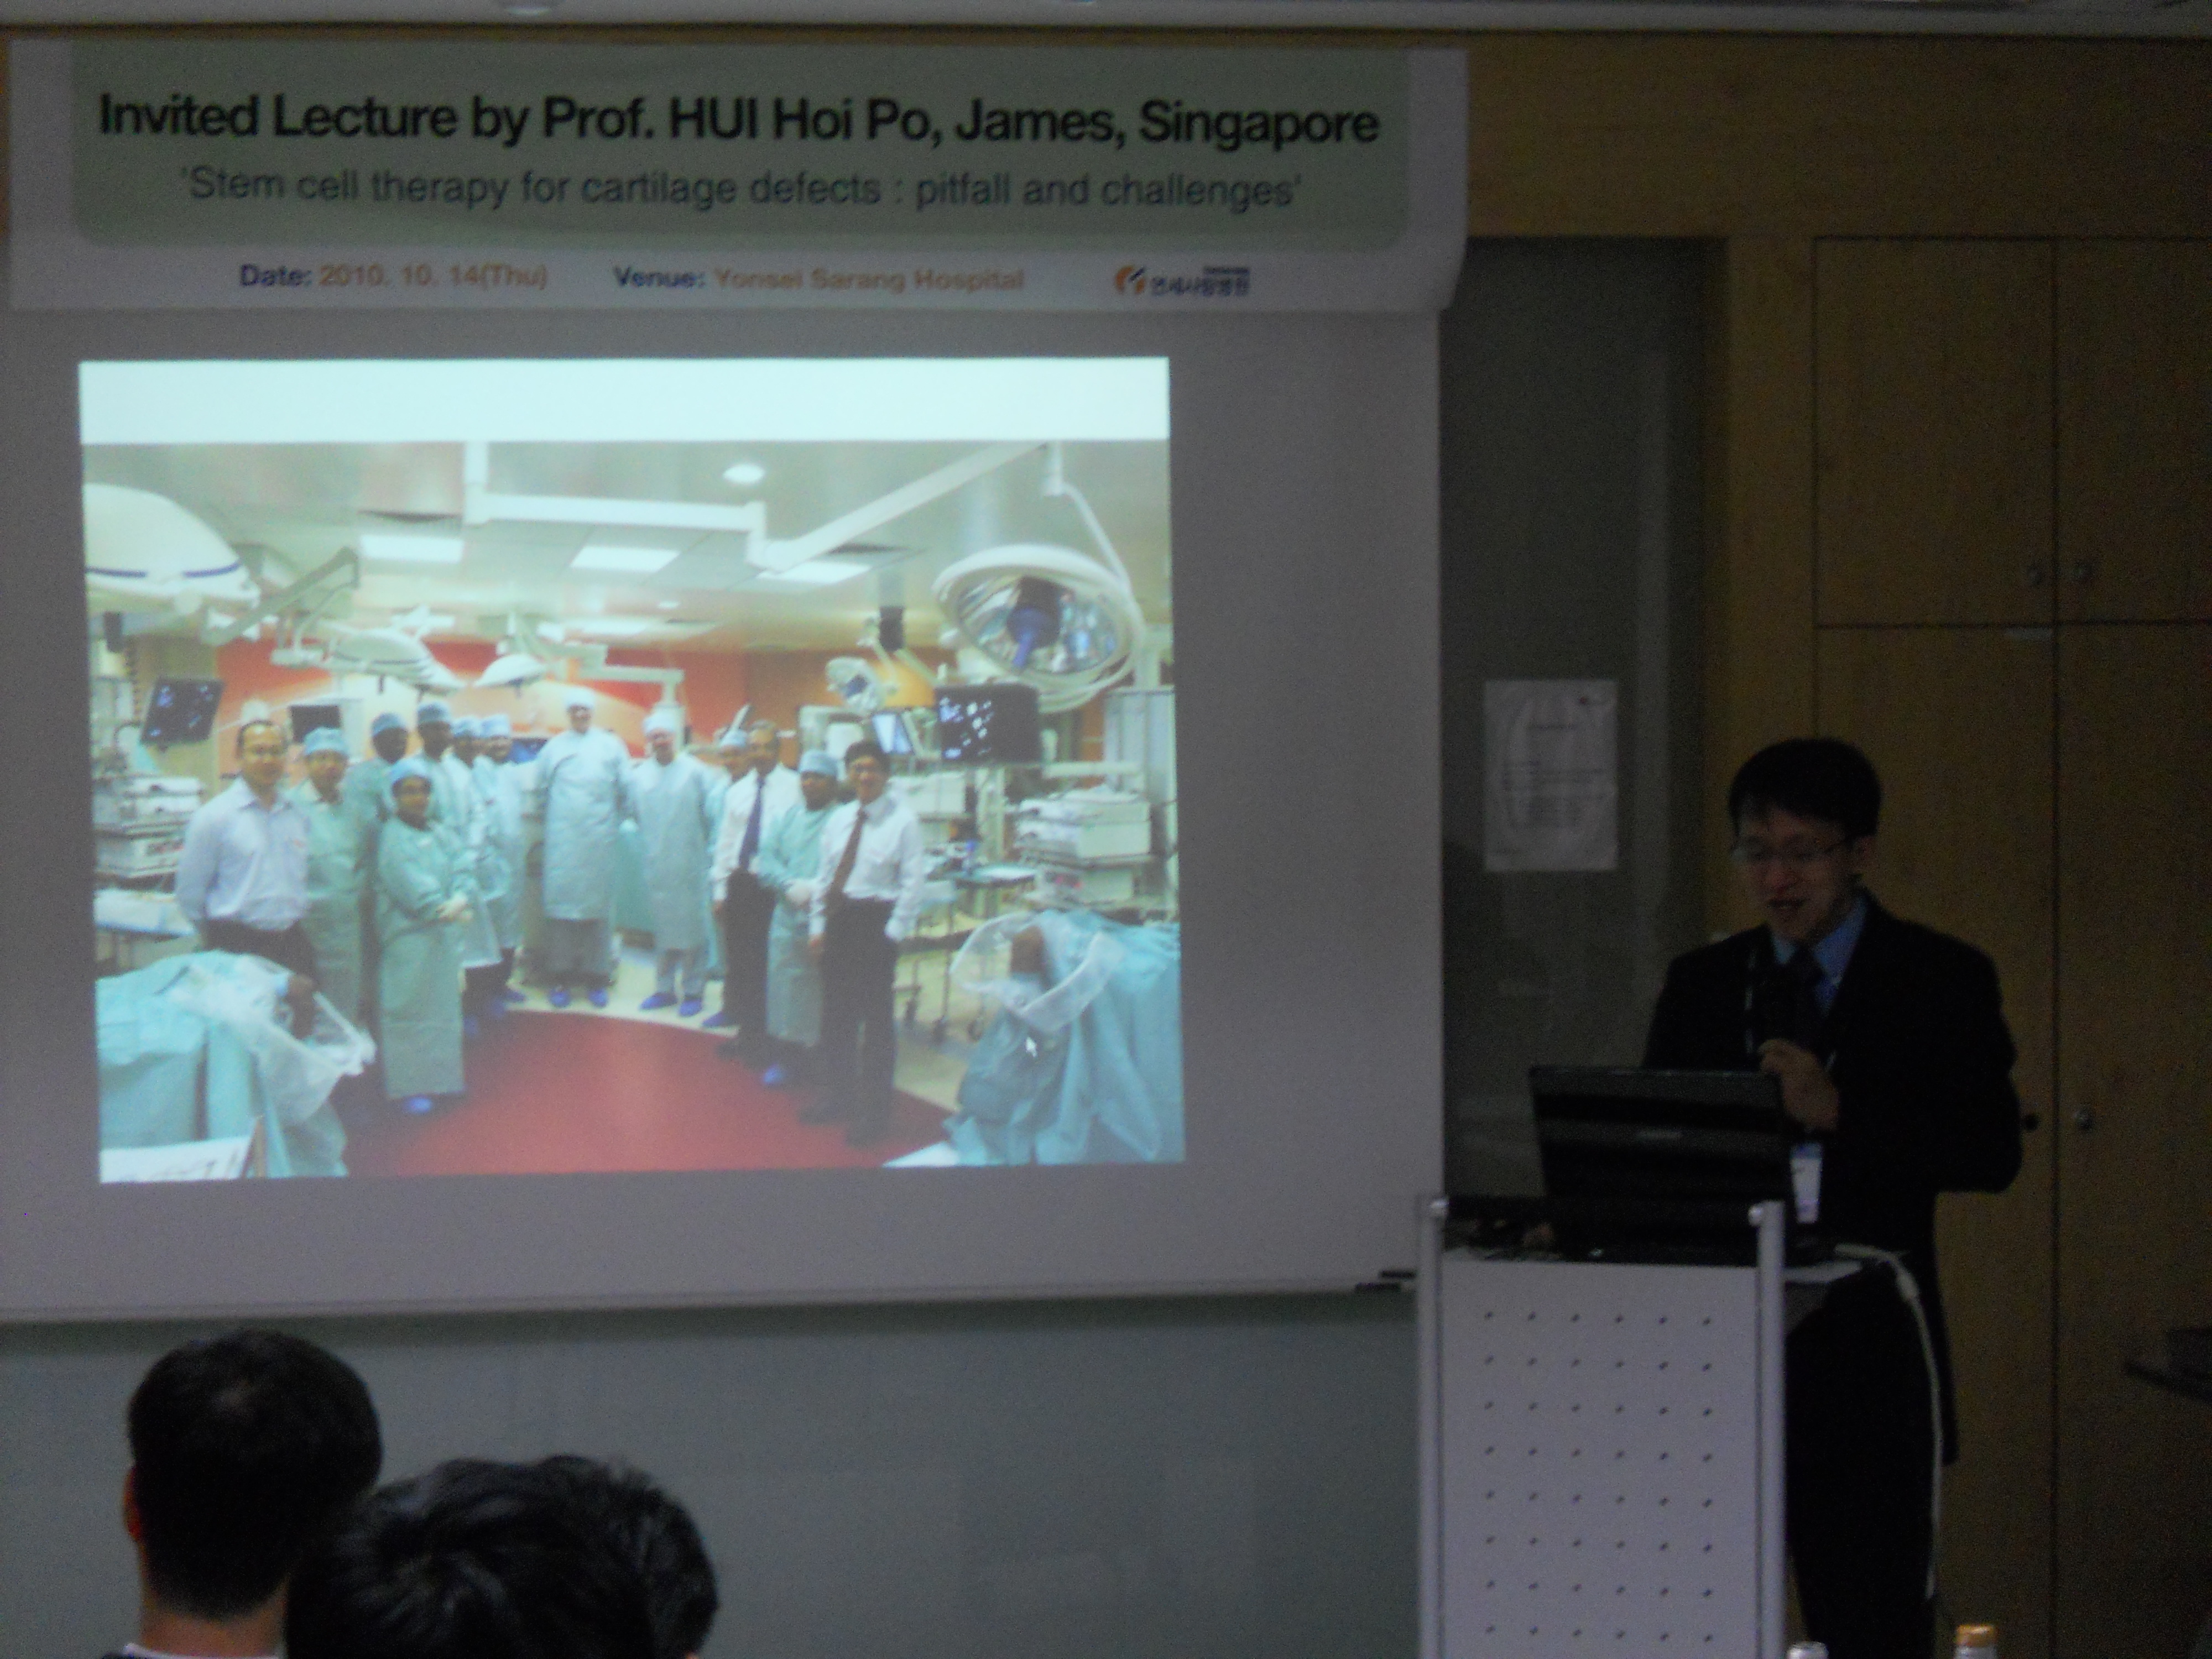 [2010-10-14] 싱가폴에서 오신 Prof. HUI Hoi Po, James님의 초청강연 게시글의 3번째 첨부파일입니다.